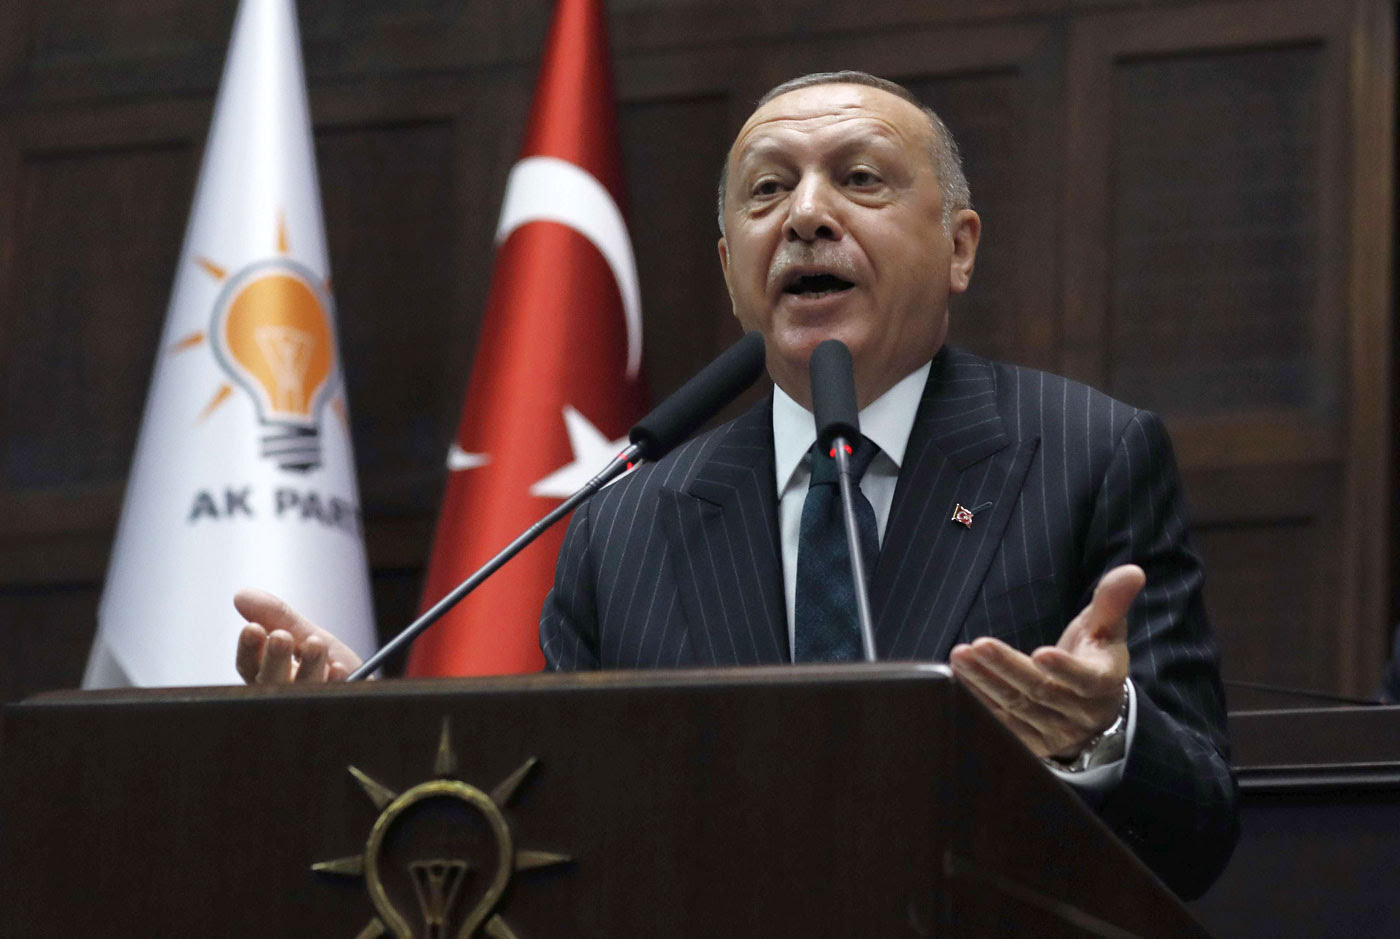 تحالف الأحزاب المنشقة عن العدالة والتنمية يهدد شعبية أردوغان